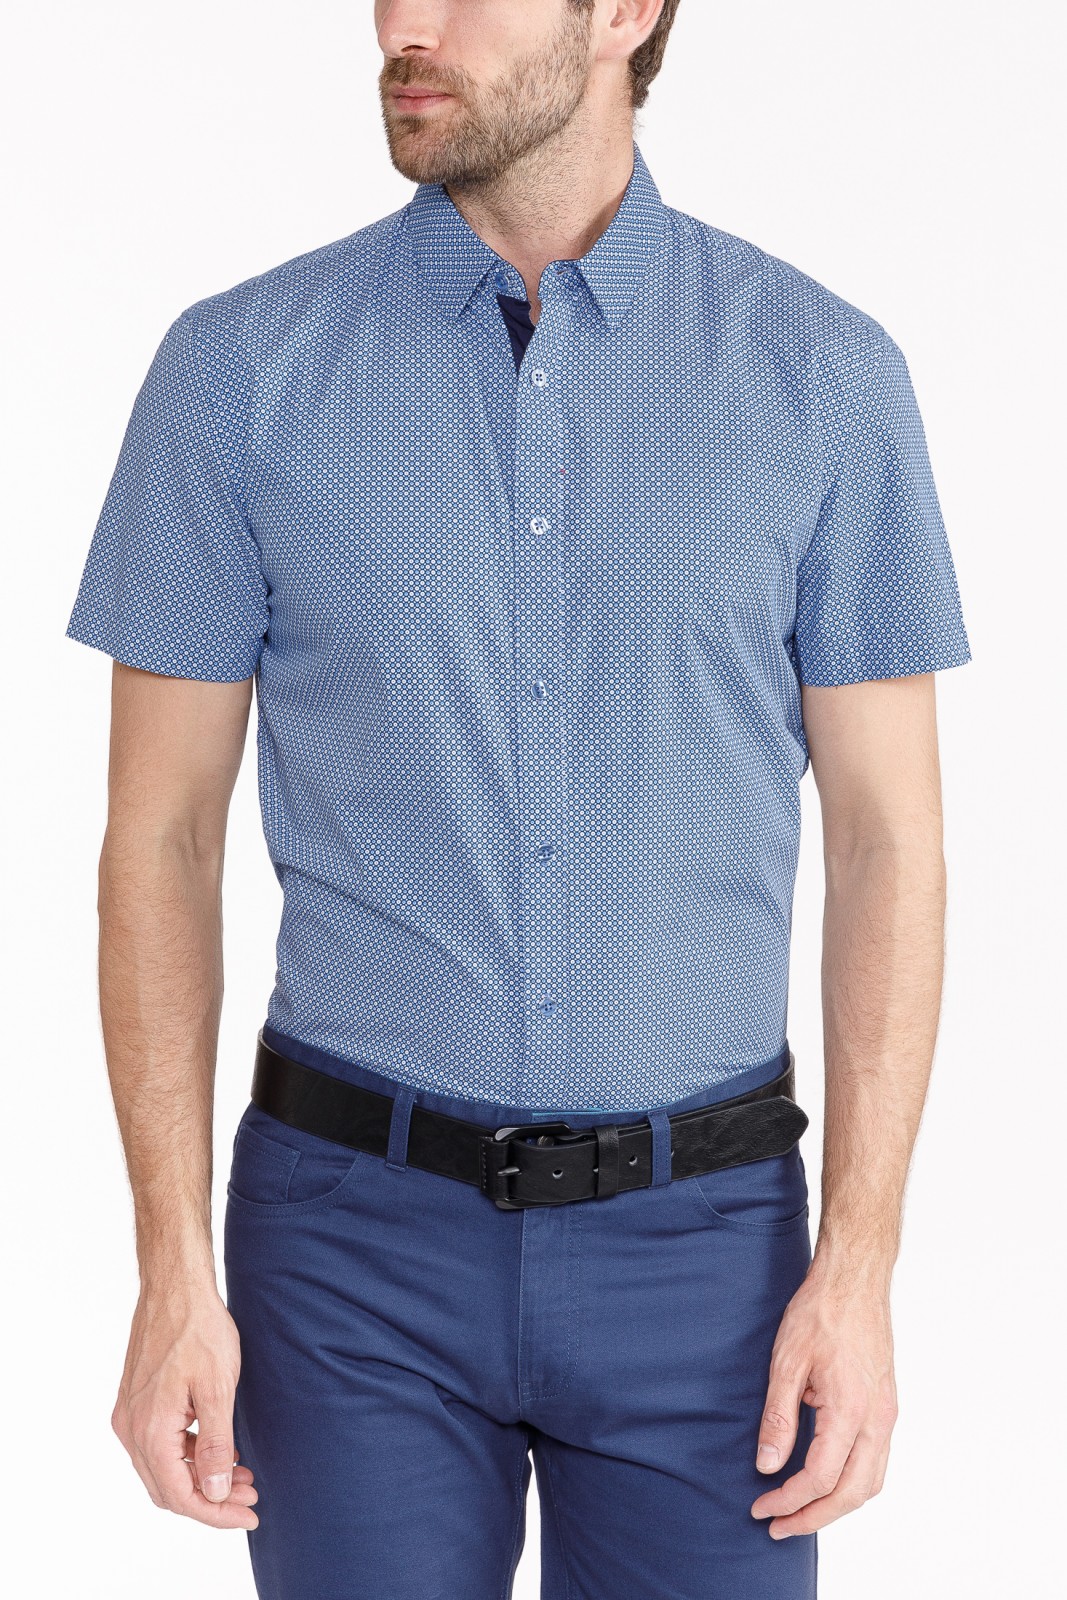 Рубашка с  короткими рукавами zolla 010242206123, цвет голубой, размер S